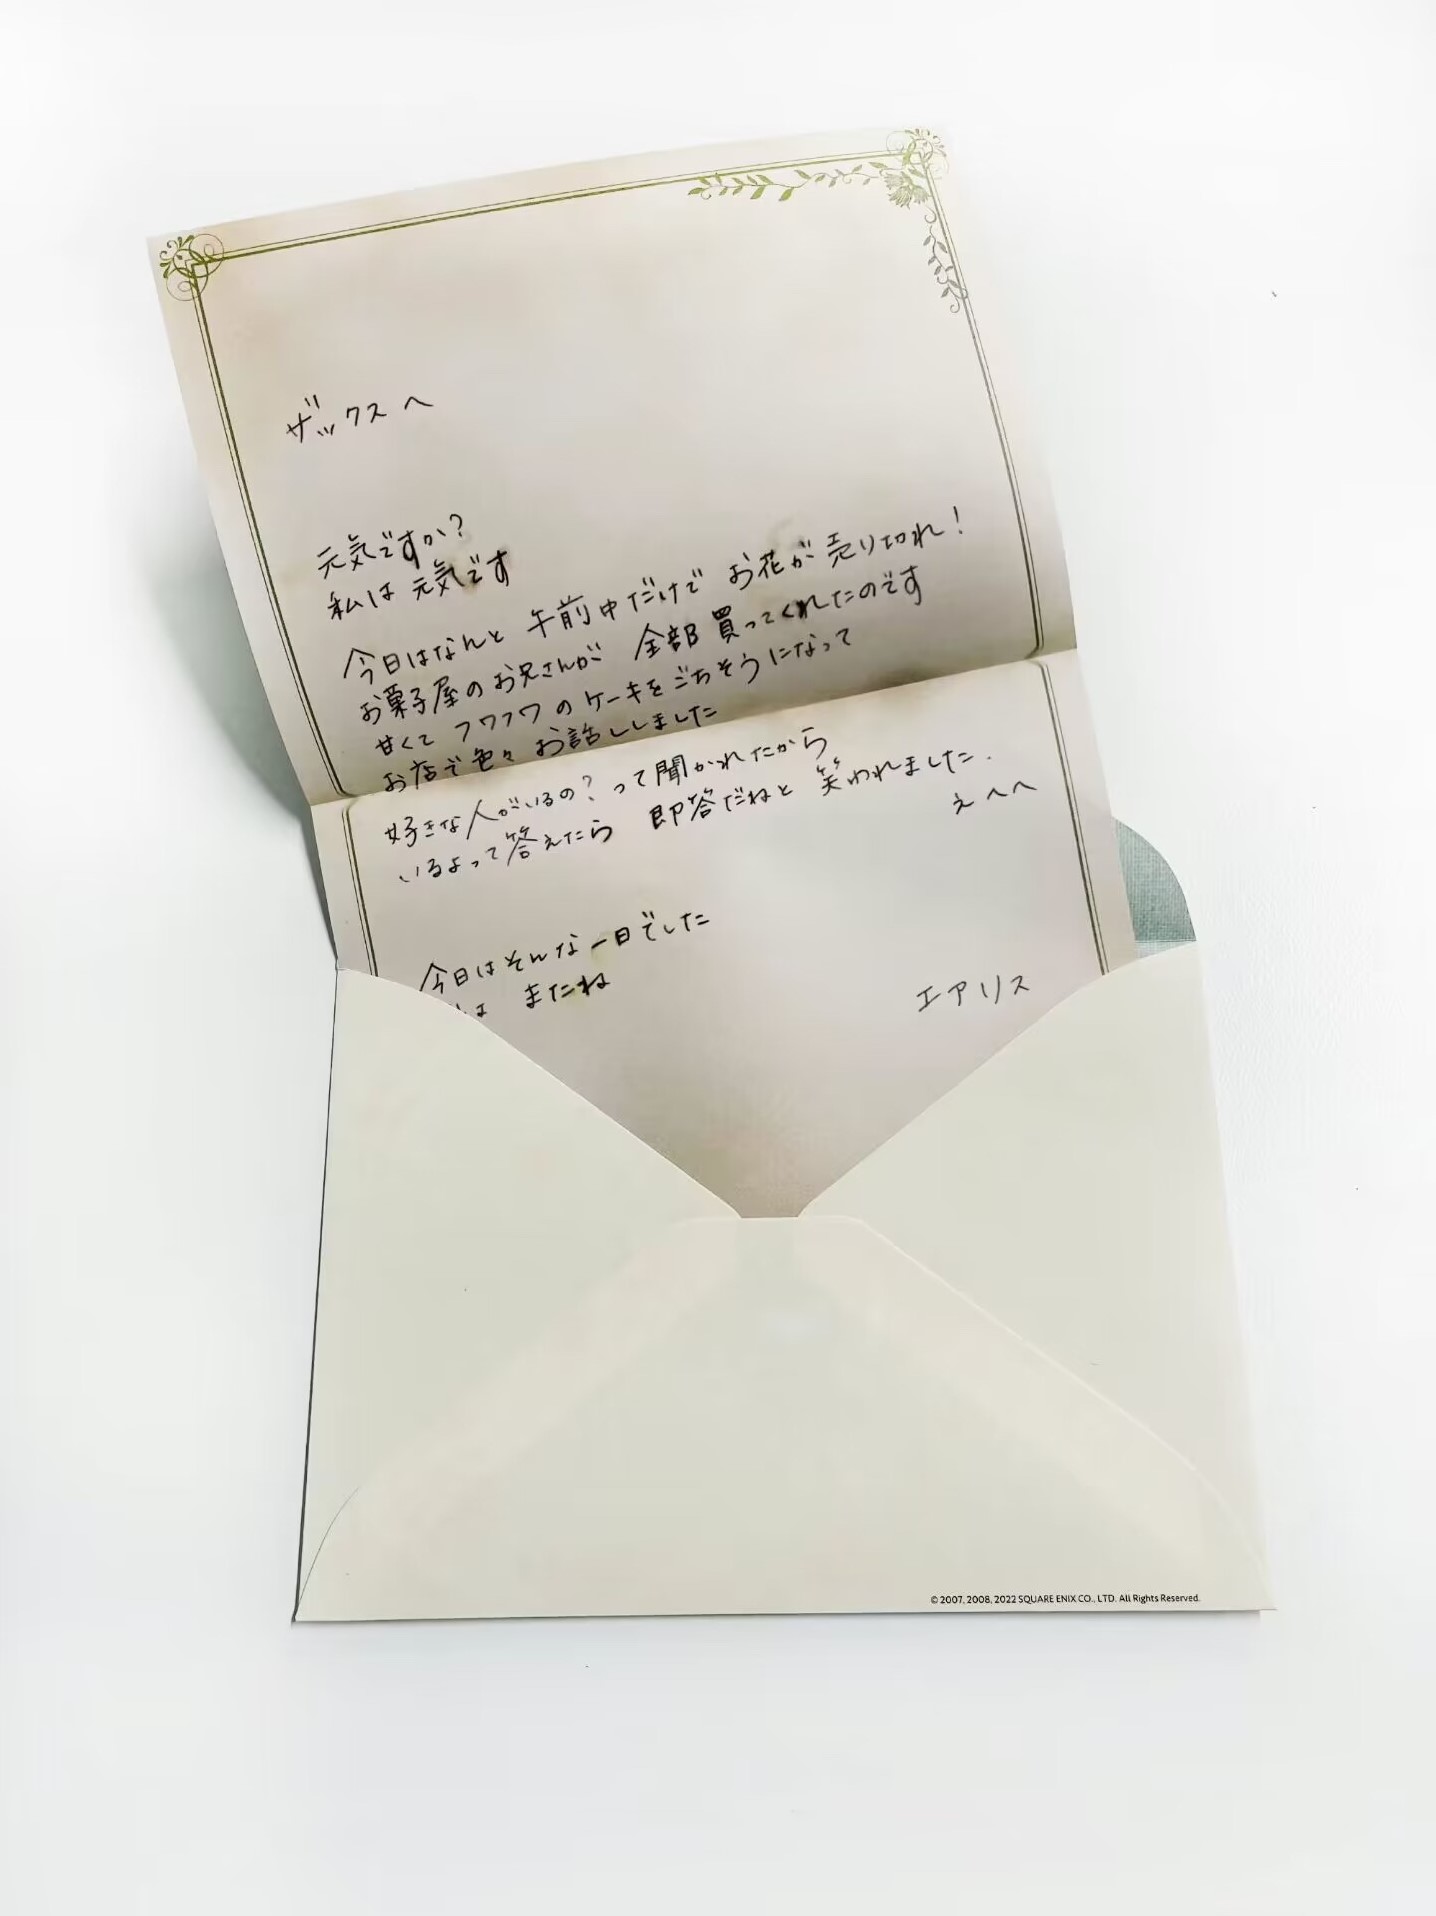 《最终幻想7核心危机重聚》典藏版爱丽丝写给扎克斯的信翻译 - 第2张